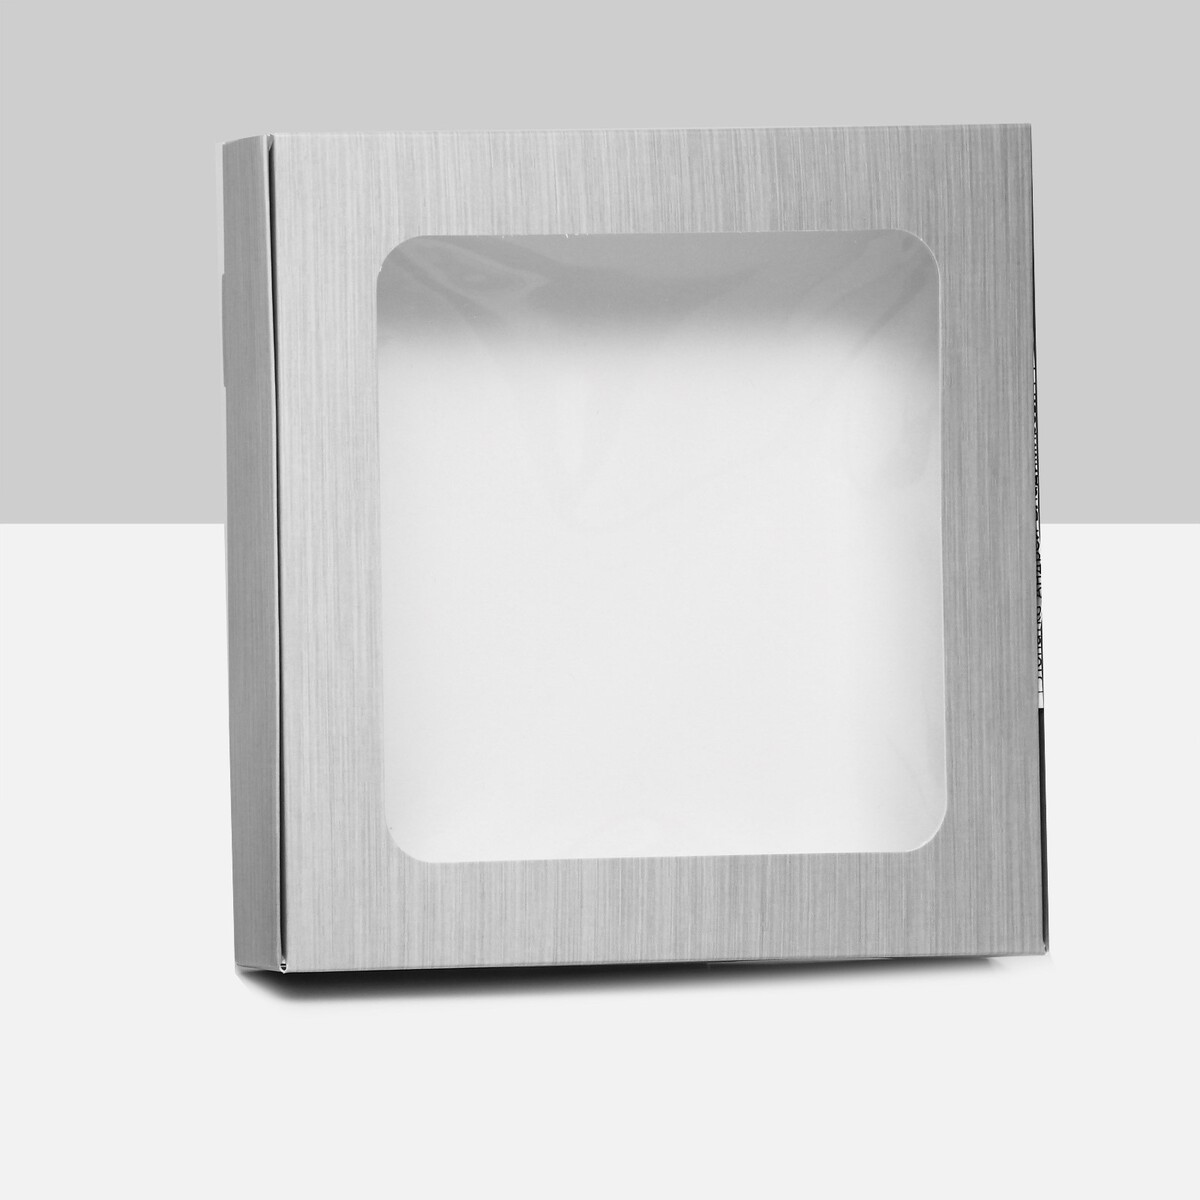 Коробка самосборная, с окном, серебрянная, 16 х 16 х 3 см коробка самосборная с окном серебрянная 16 х 16 х 3 см